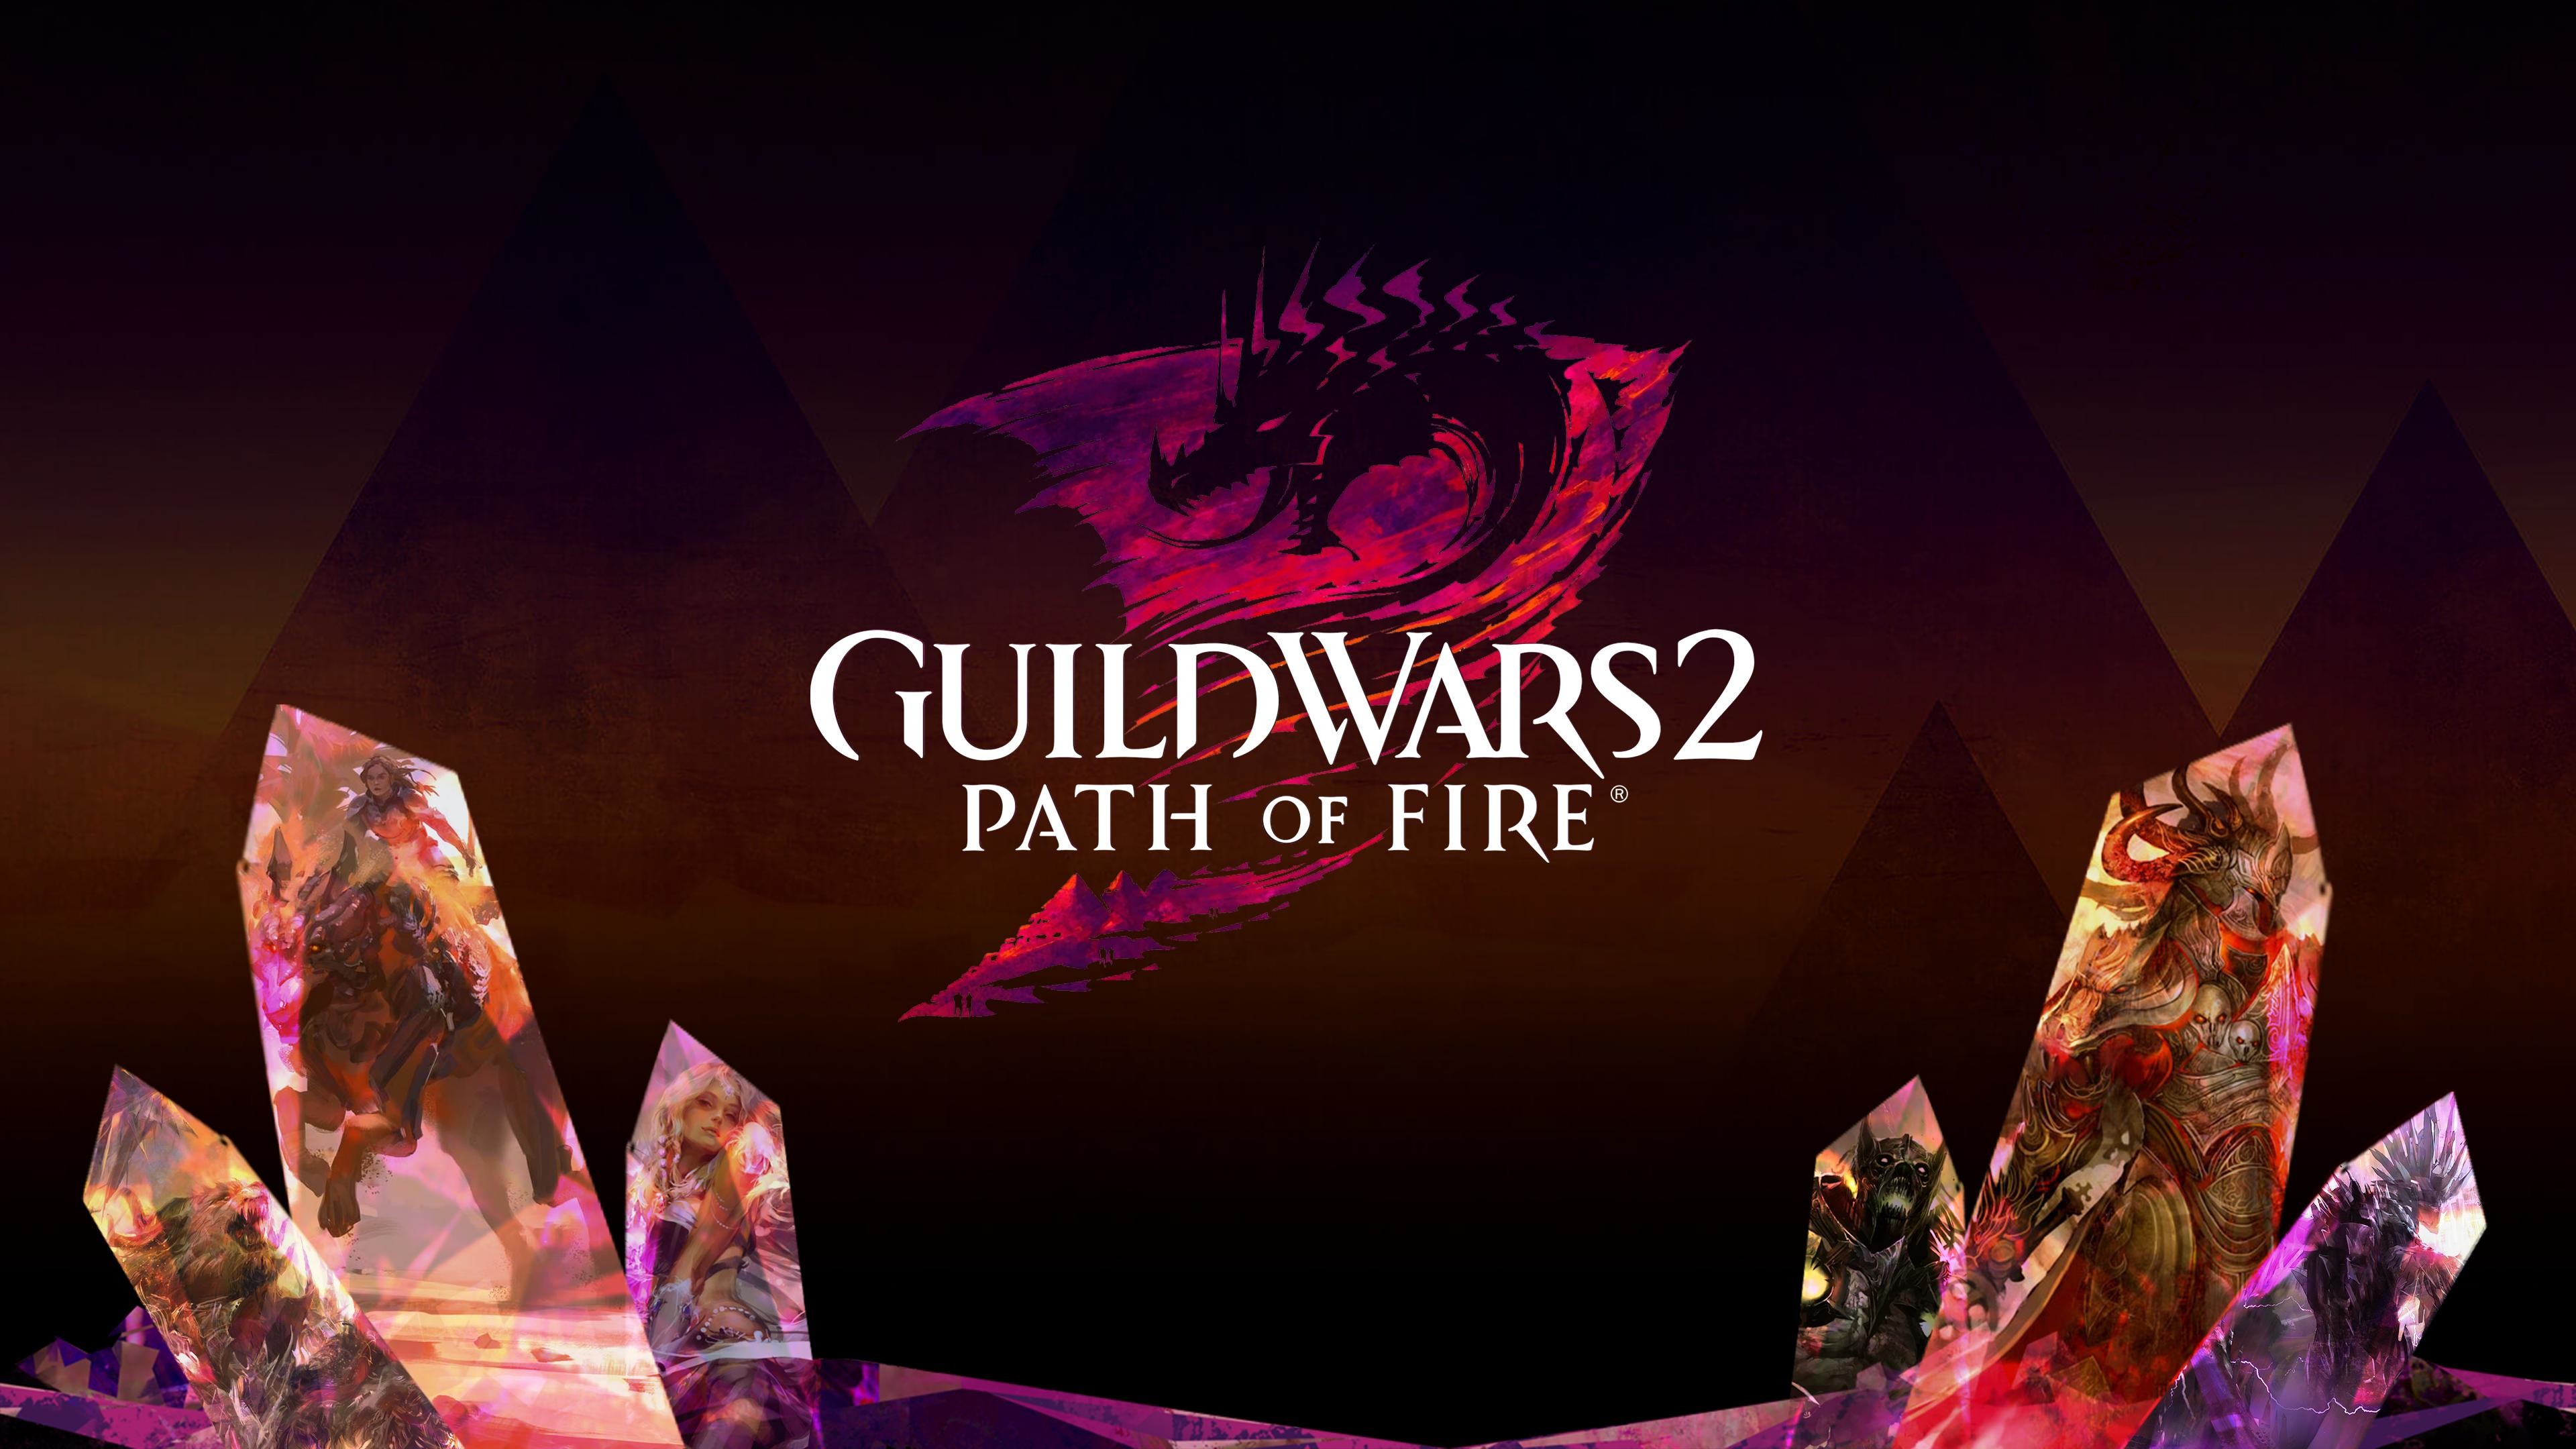 Fan Guild Wars 2 Path of Fire Wallpaper by / u / eq zanzoken